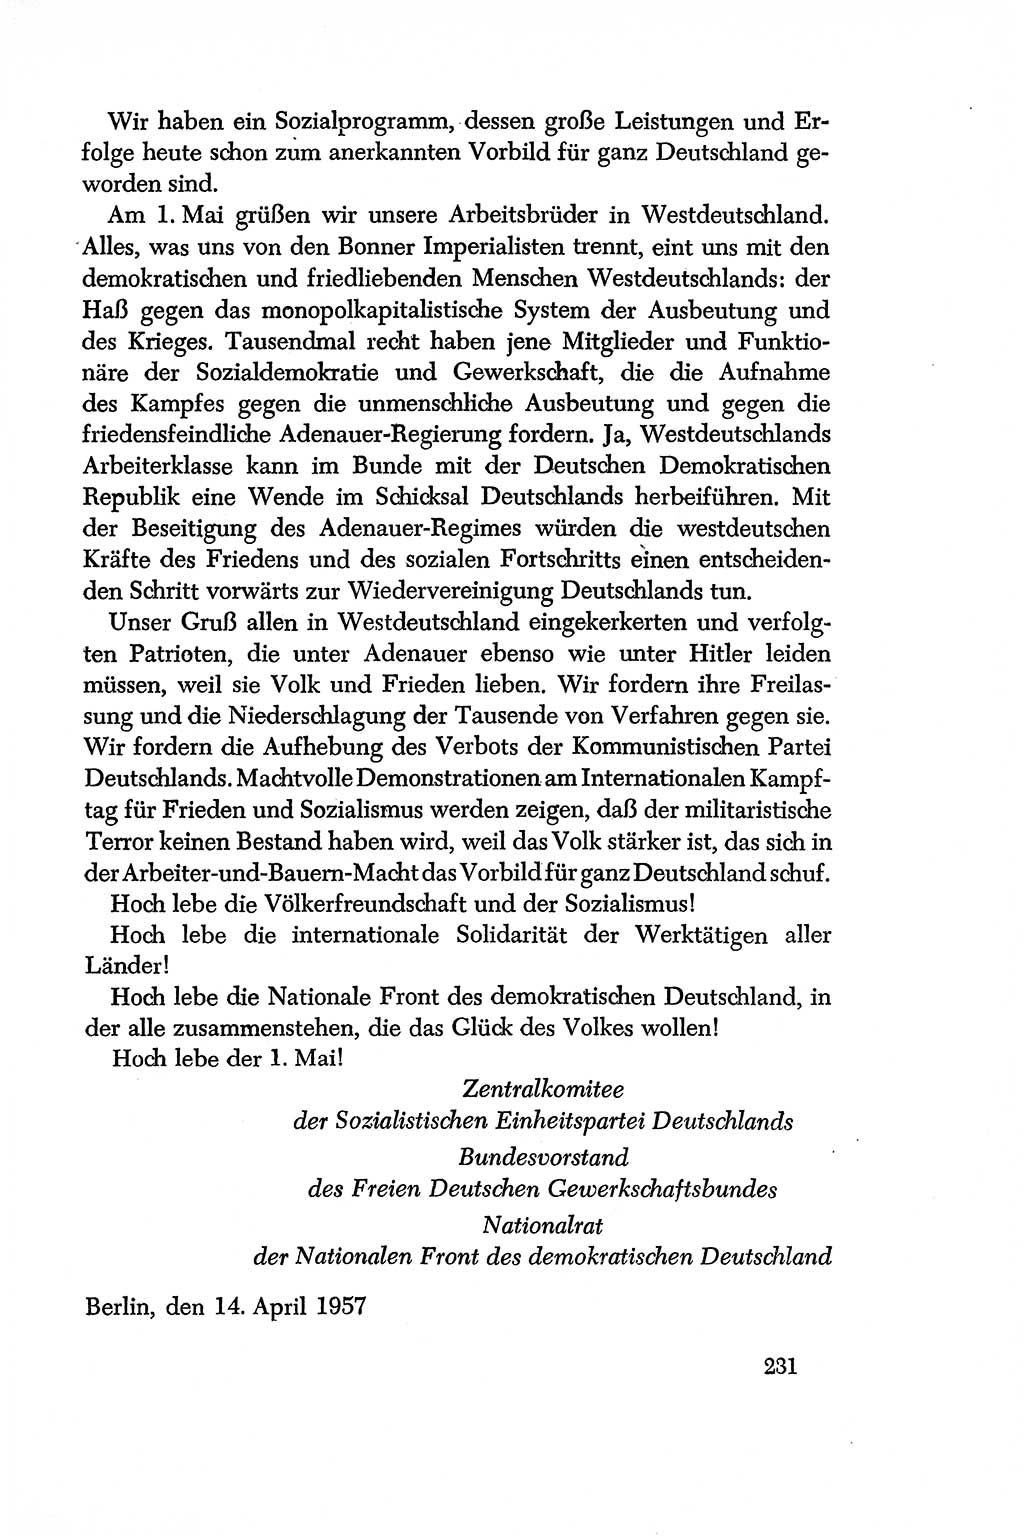 Dokumente der Sozialistischen Einheitspartei Deutschlands (SED) [Deutsche Demokratische Republik (DDR)] 1956-1957, Seite 231 (Dok. SED DDR 1956-1957, S. 231)